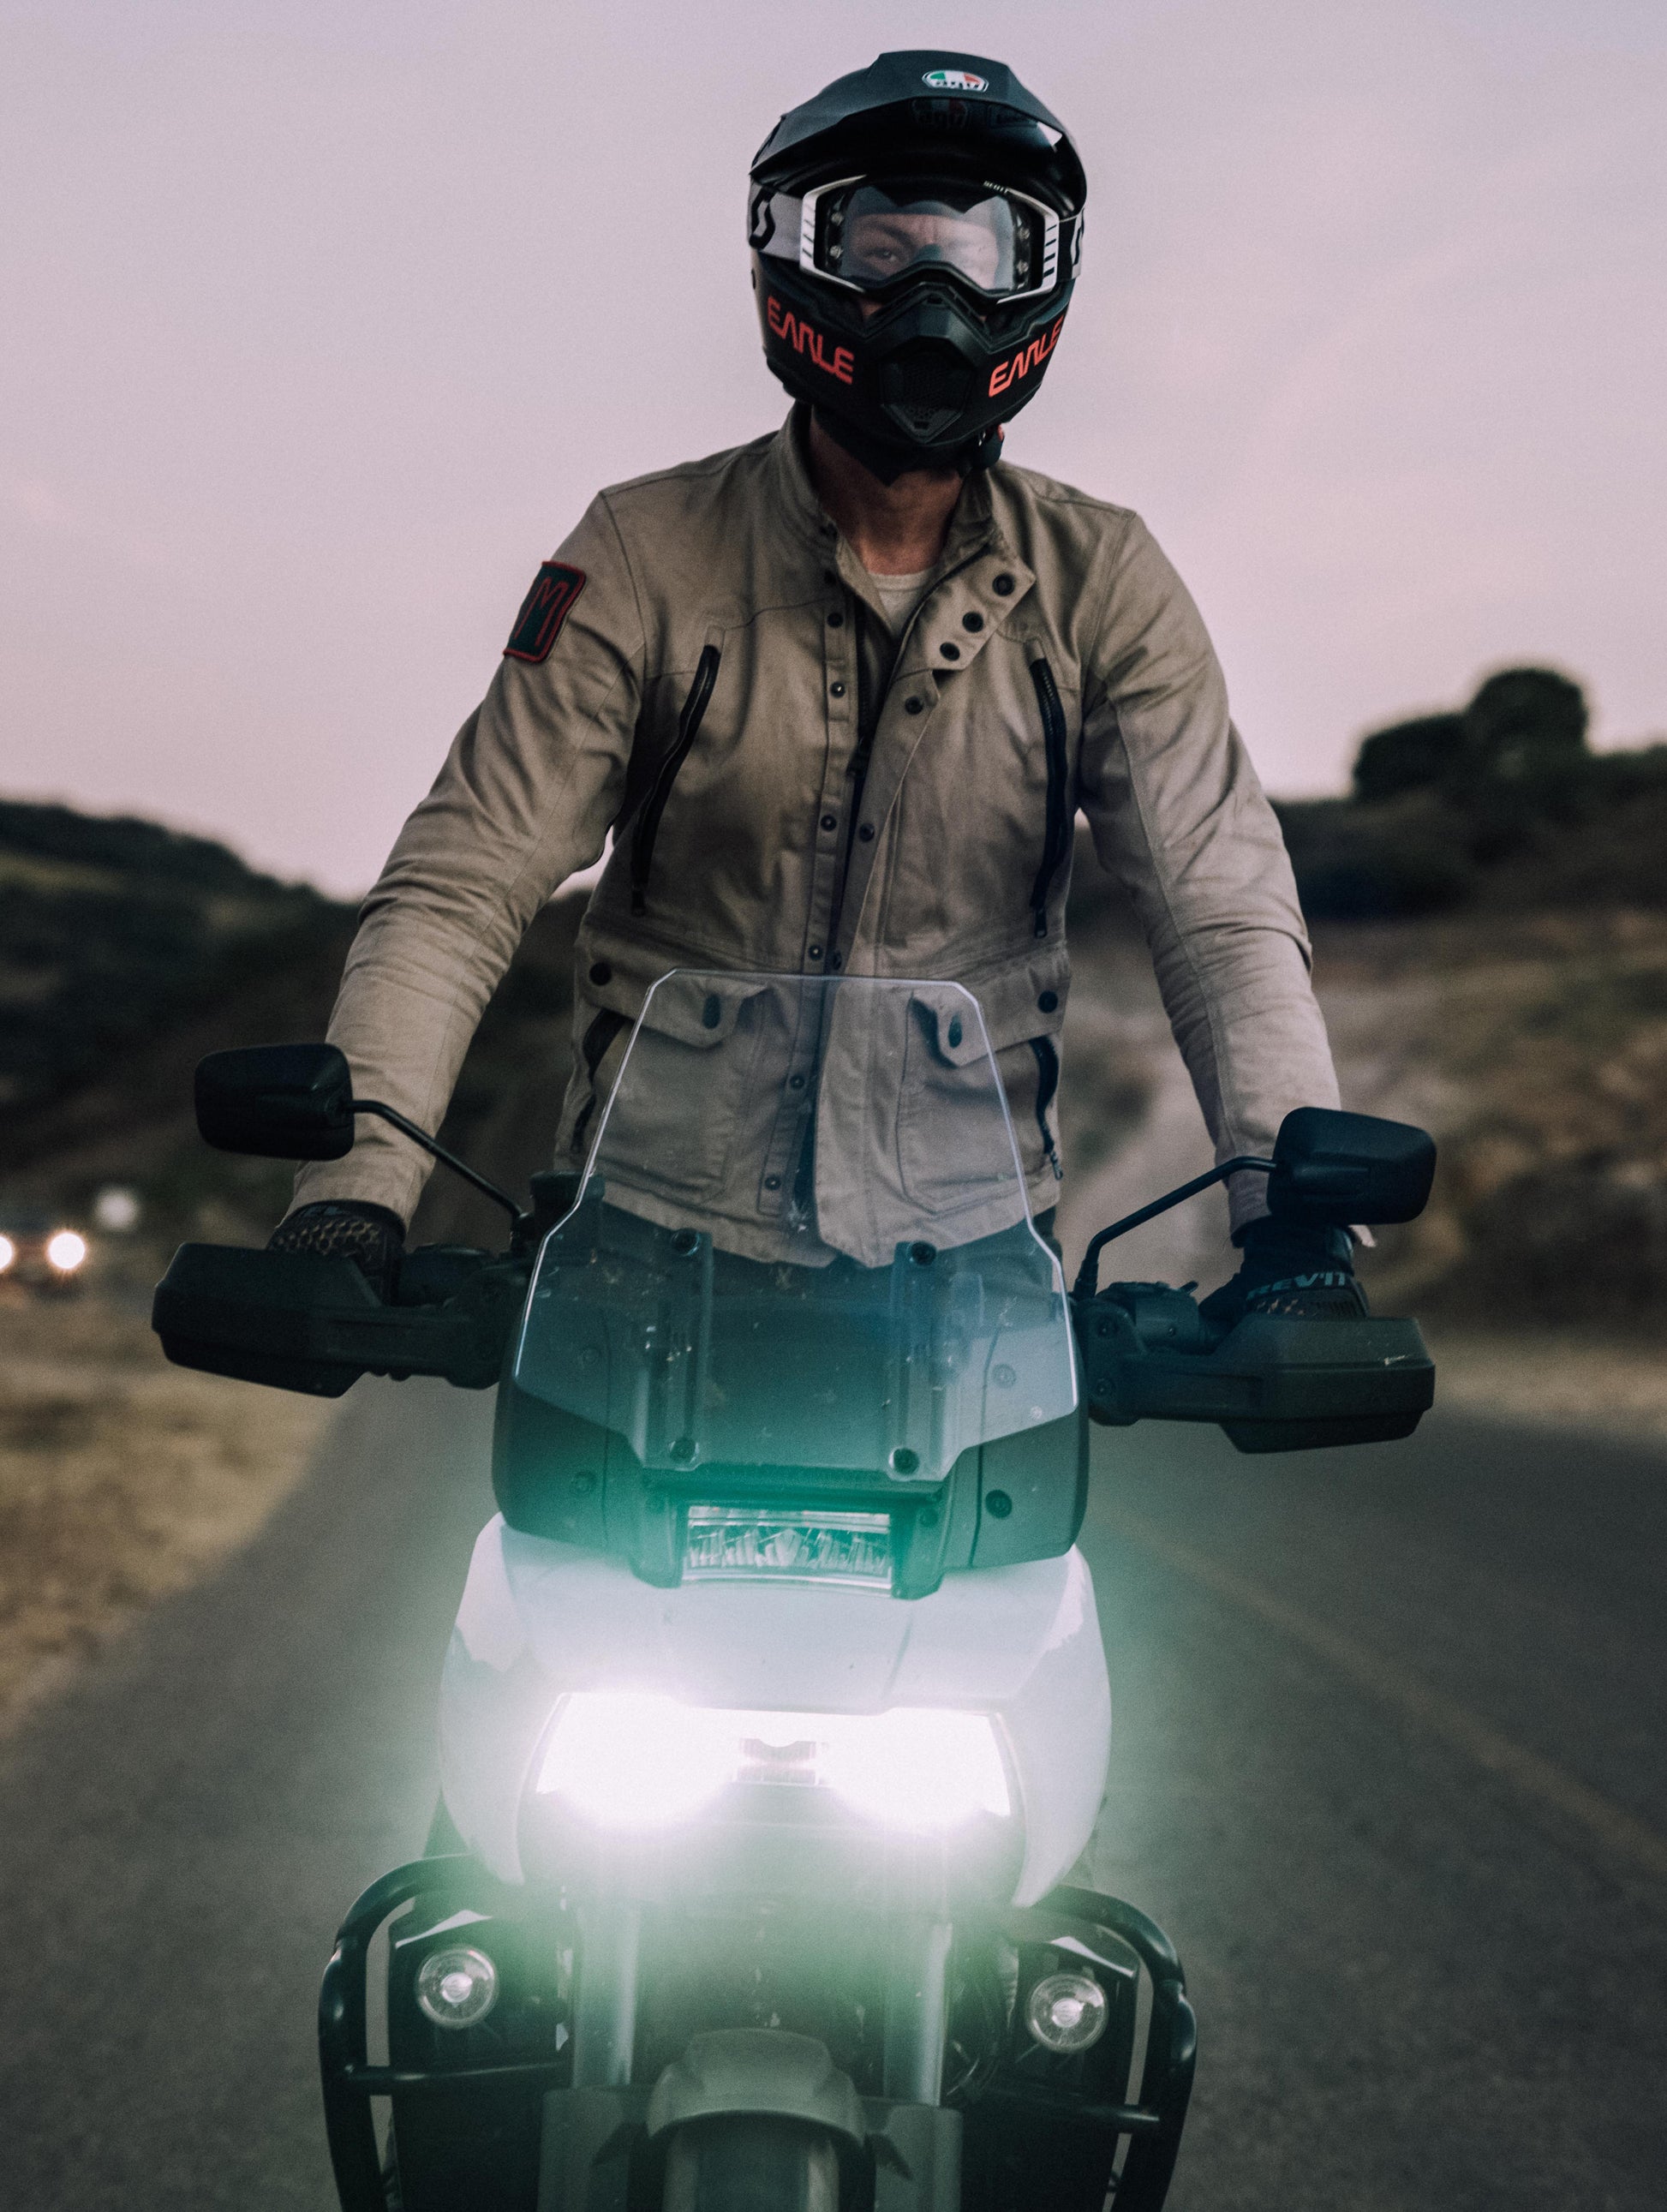 man on motorcycle wearing tan jacket